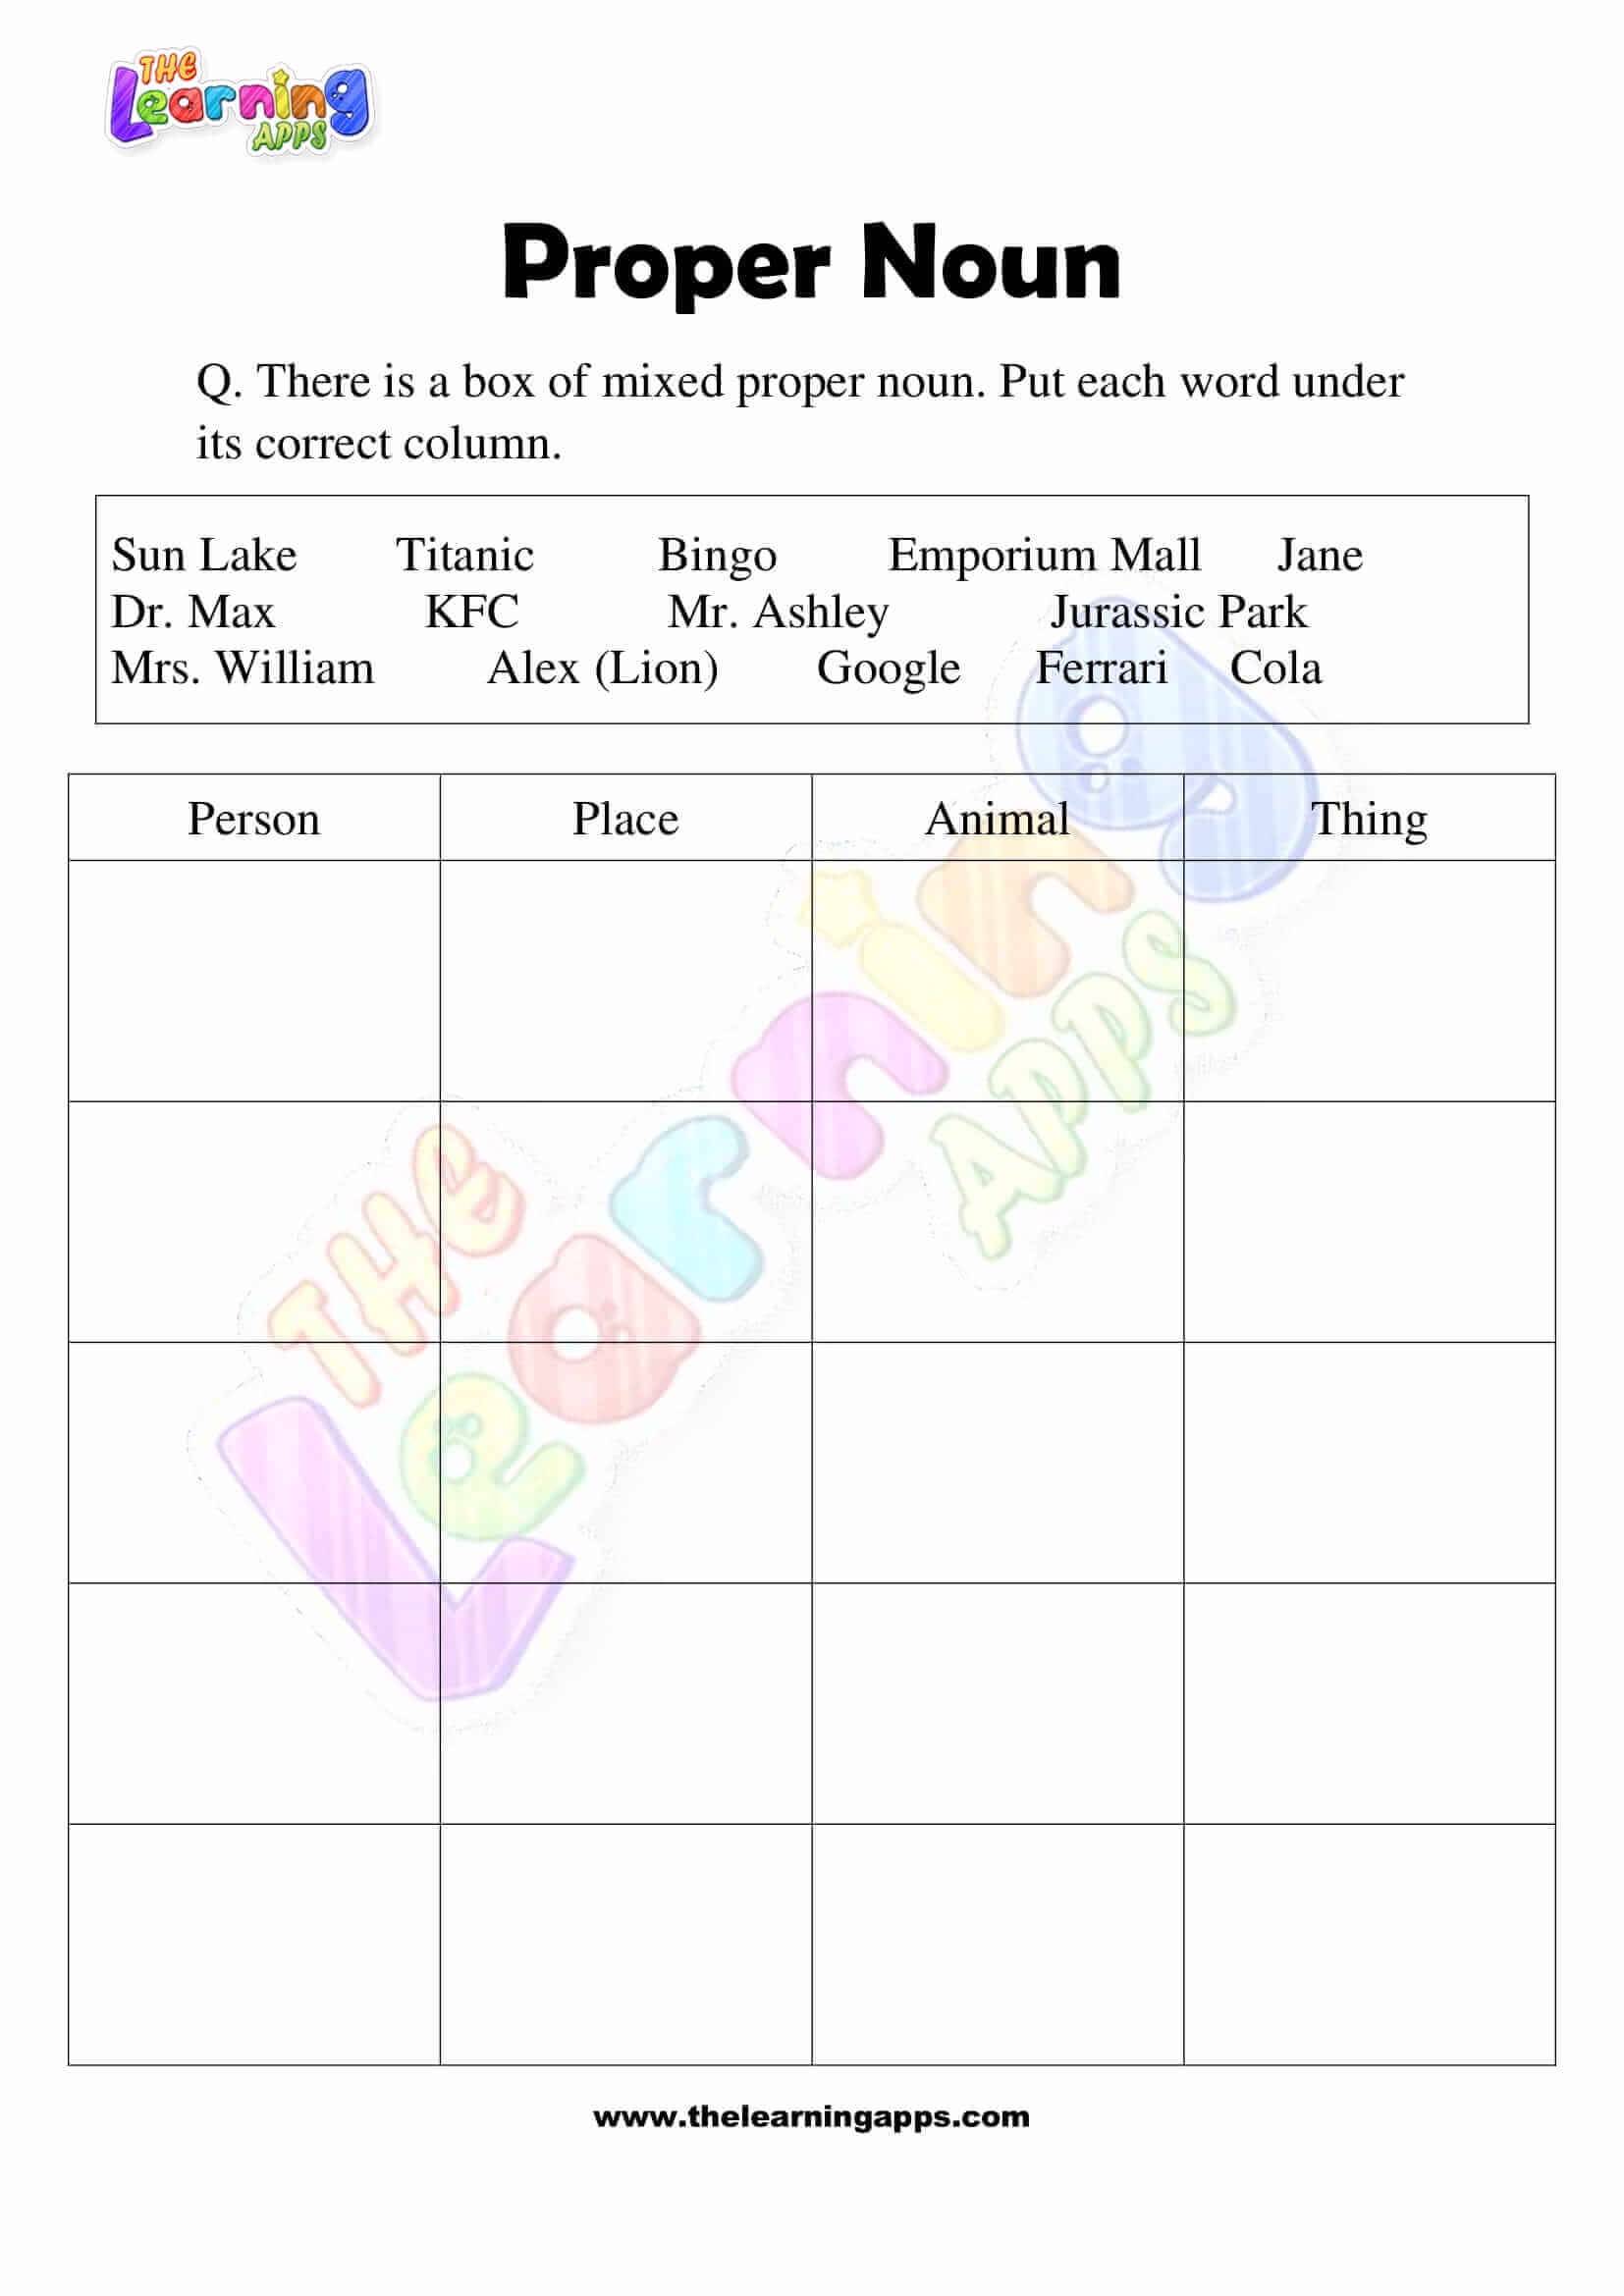 Proper-Noun-Worksheets-Grade-3-Activity-5